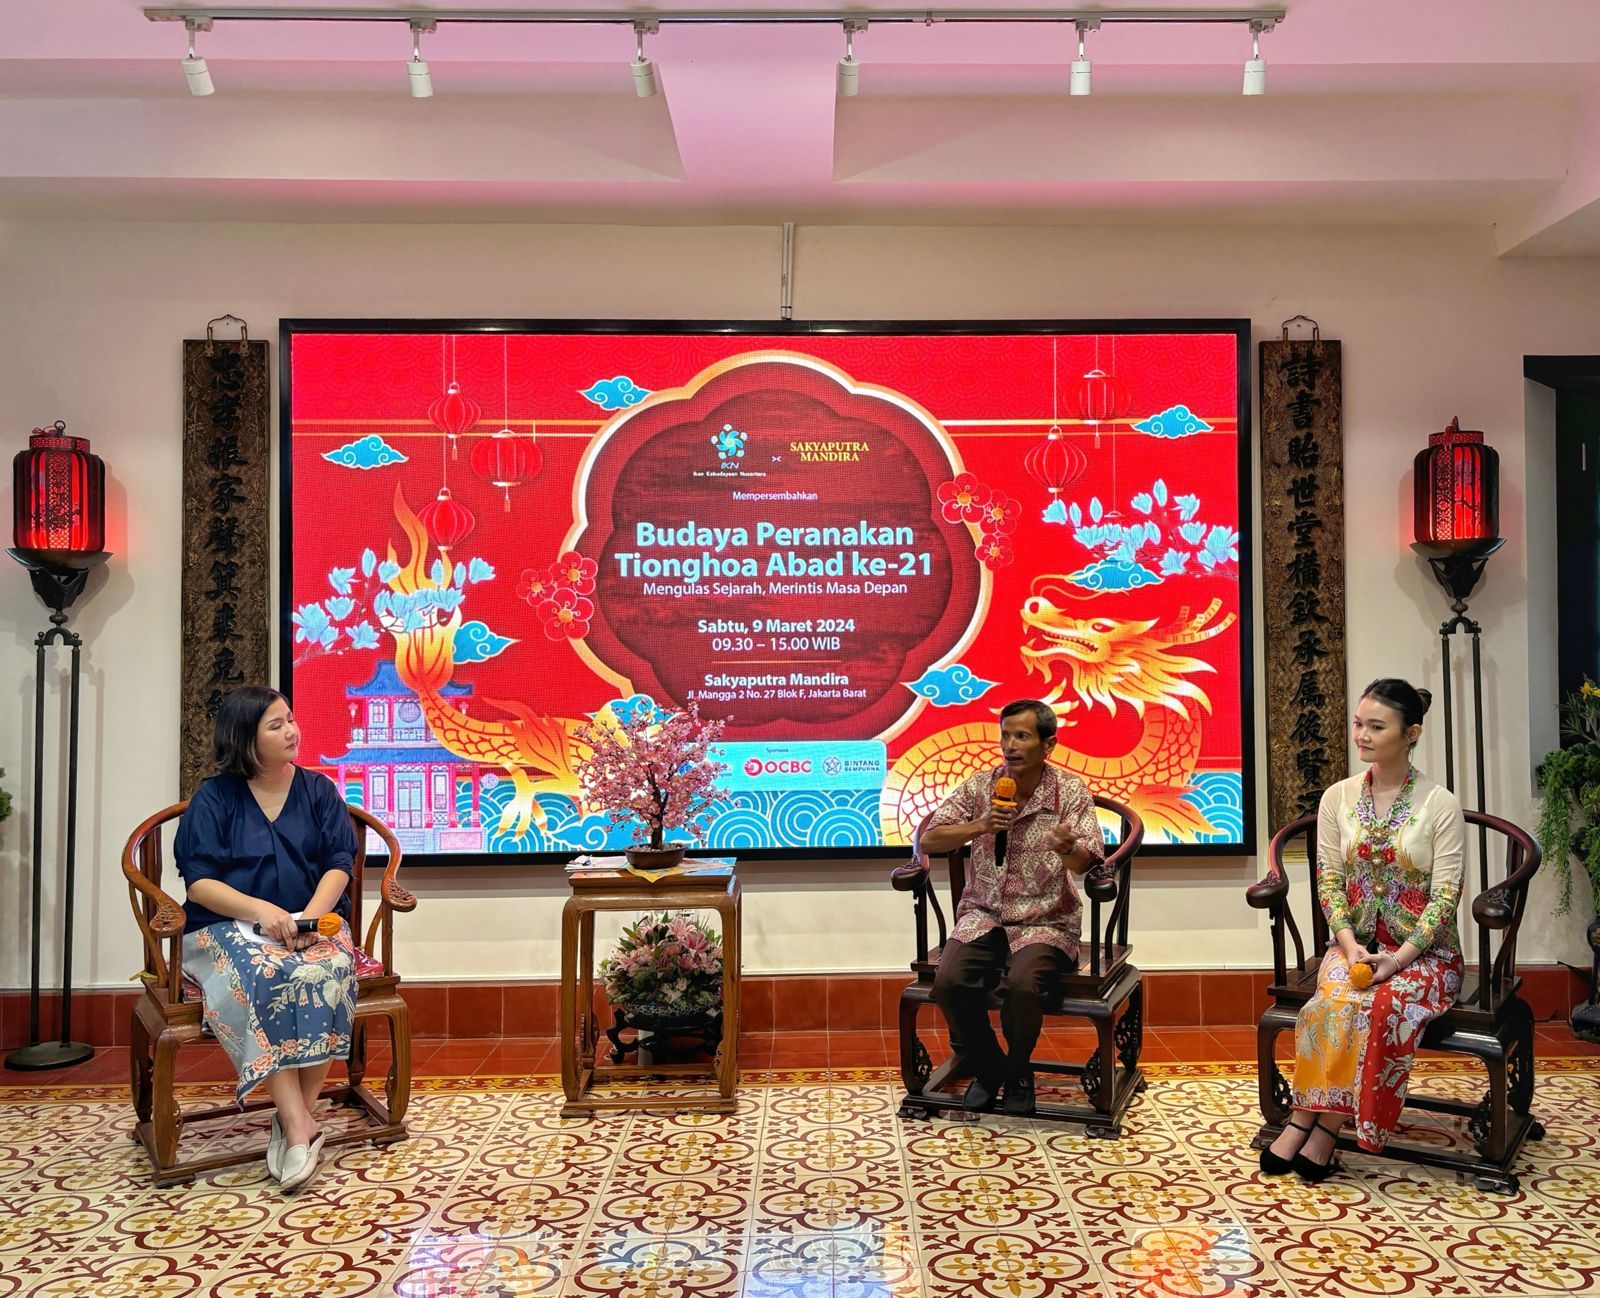 (Ki-ka) Grace Khoesoema (moderator), Sinolog UI Eddy P Witanto, dan Gen Z influencer Selly Gouw dalam diskusi Budaya Peranakan Tionghoa yang diadakan Yayasan Ikon Kebudayaan Nusantara, di Sakyaputra Mandira, Jakarta, Sabtu (9/3/2024). 